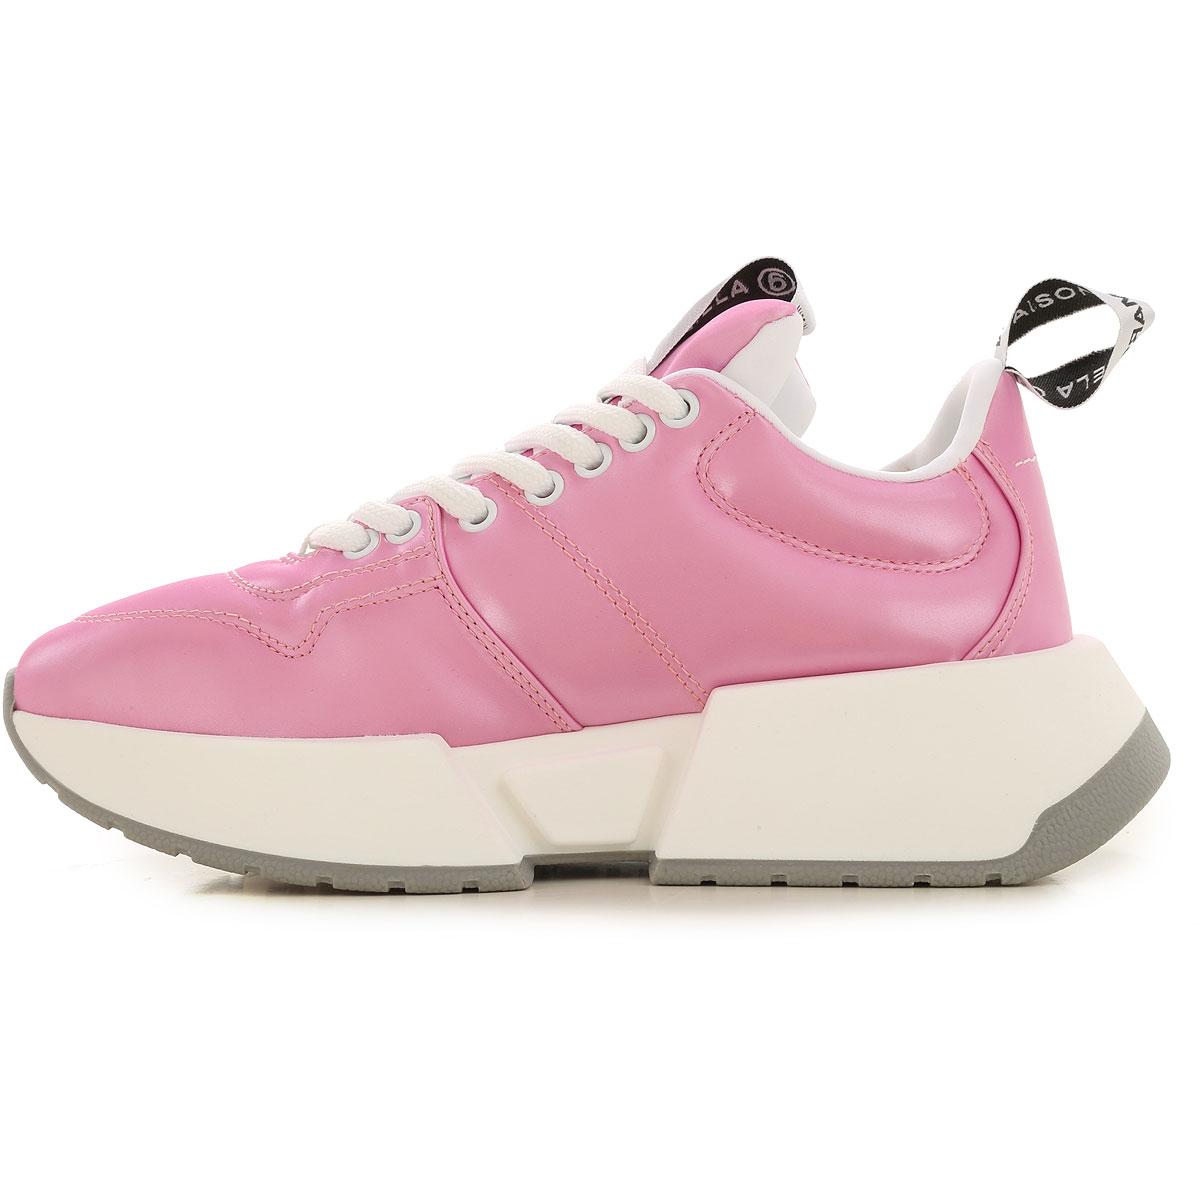 Maison Margiela Sneakers For Women in Pink - Lyst